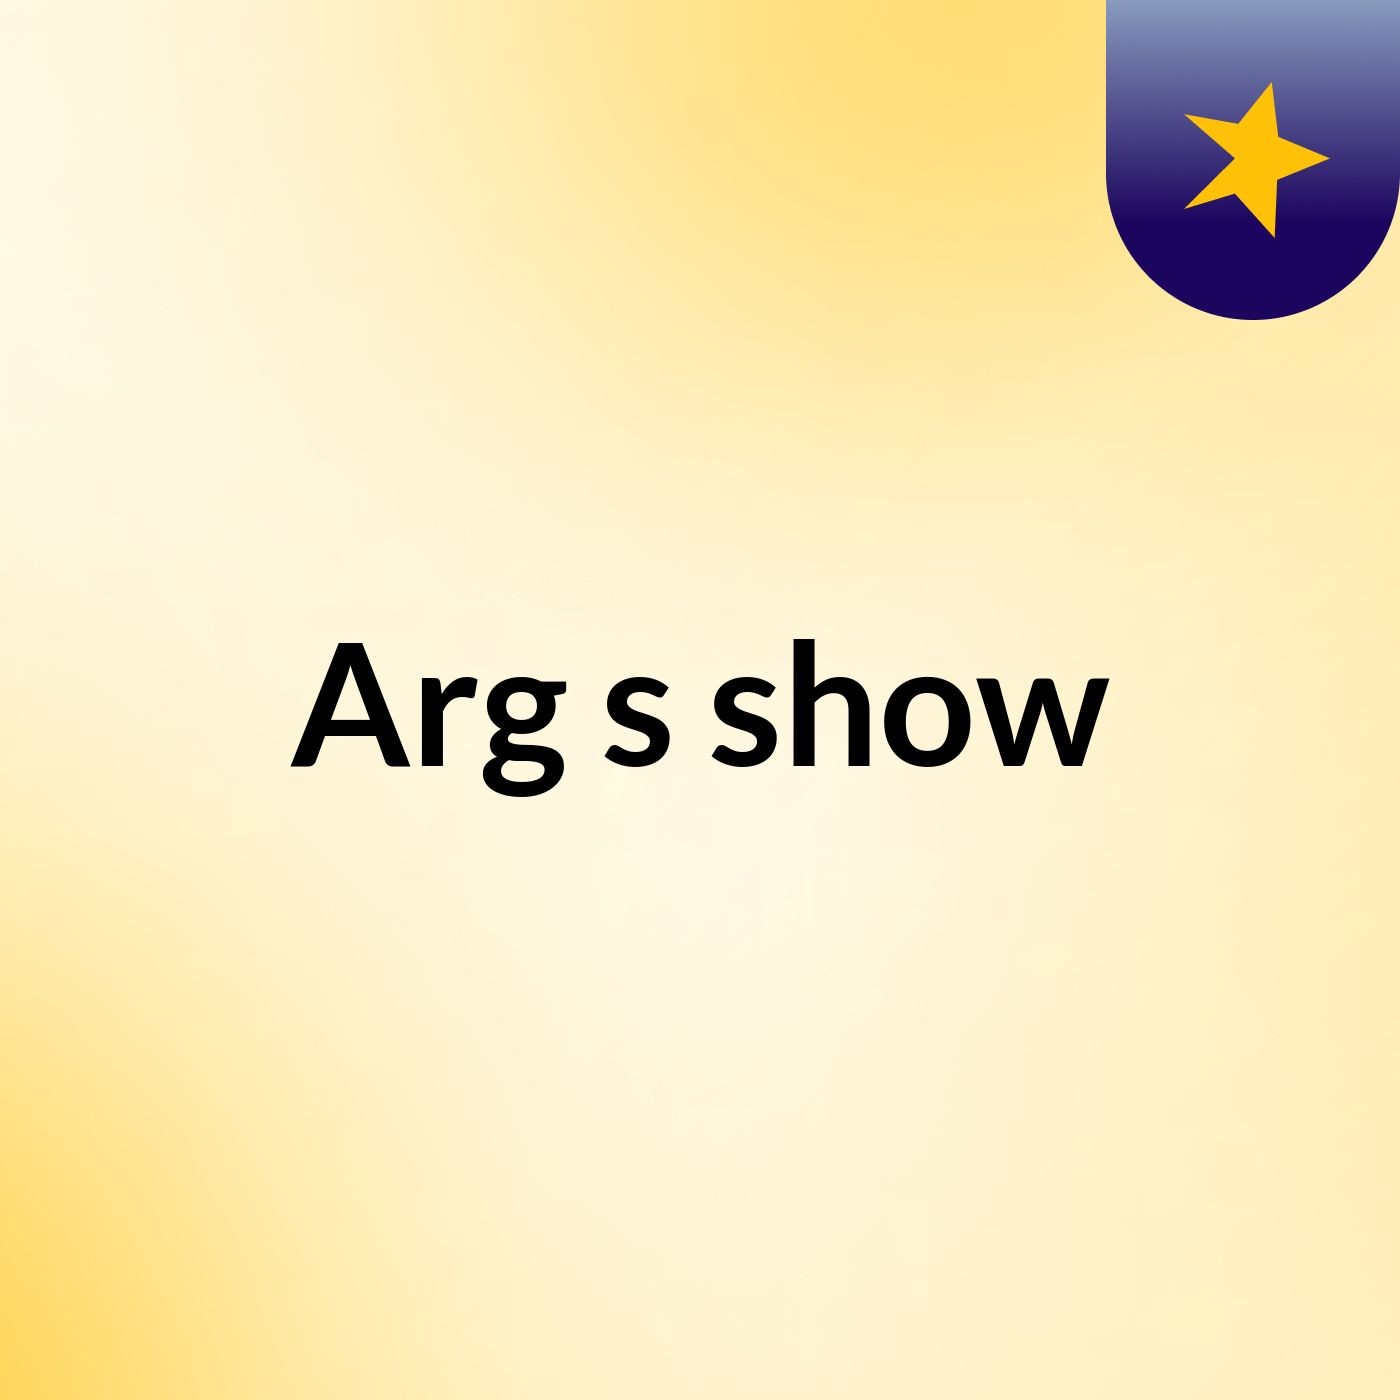 Arg's show